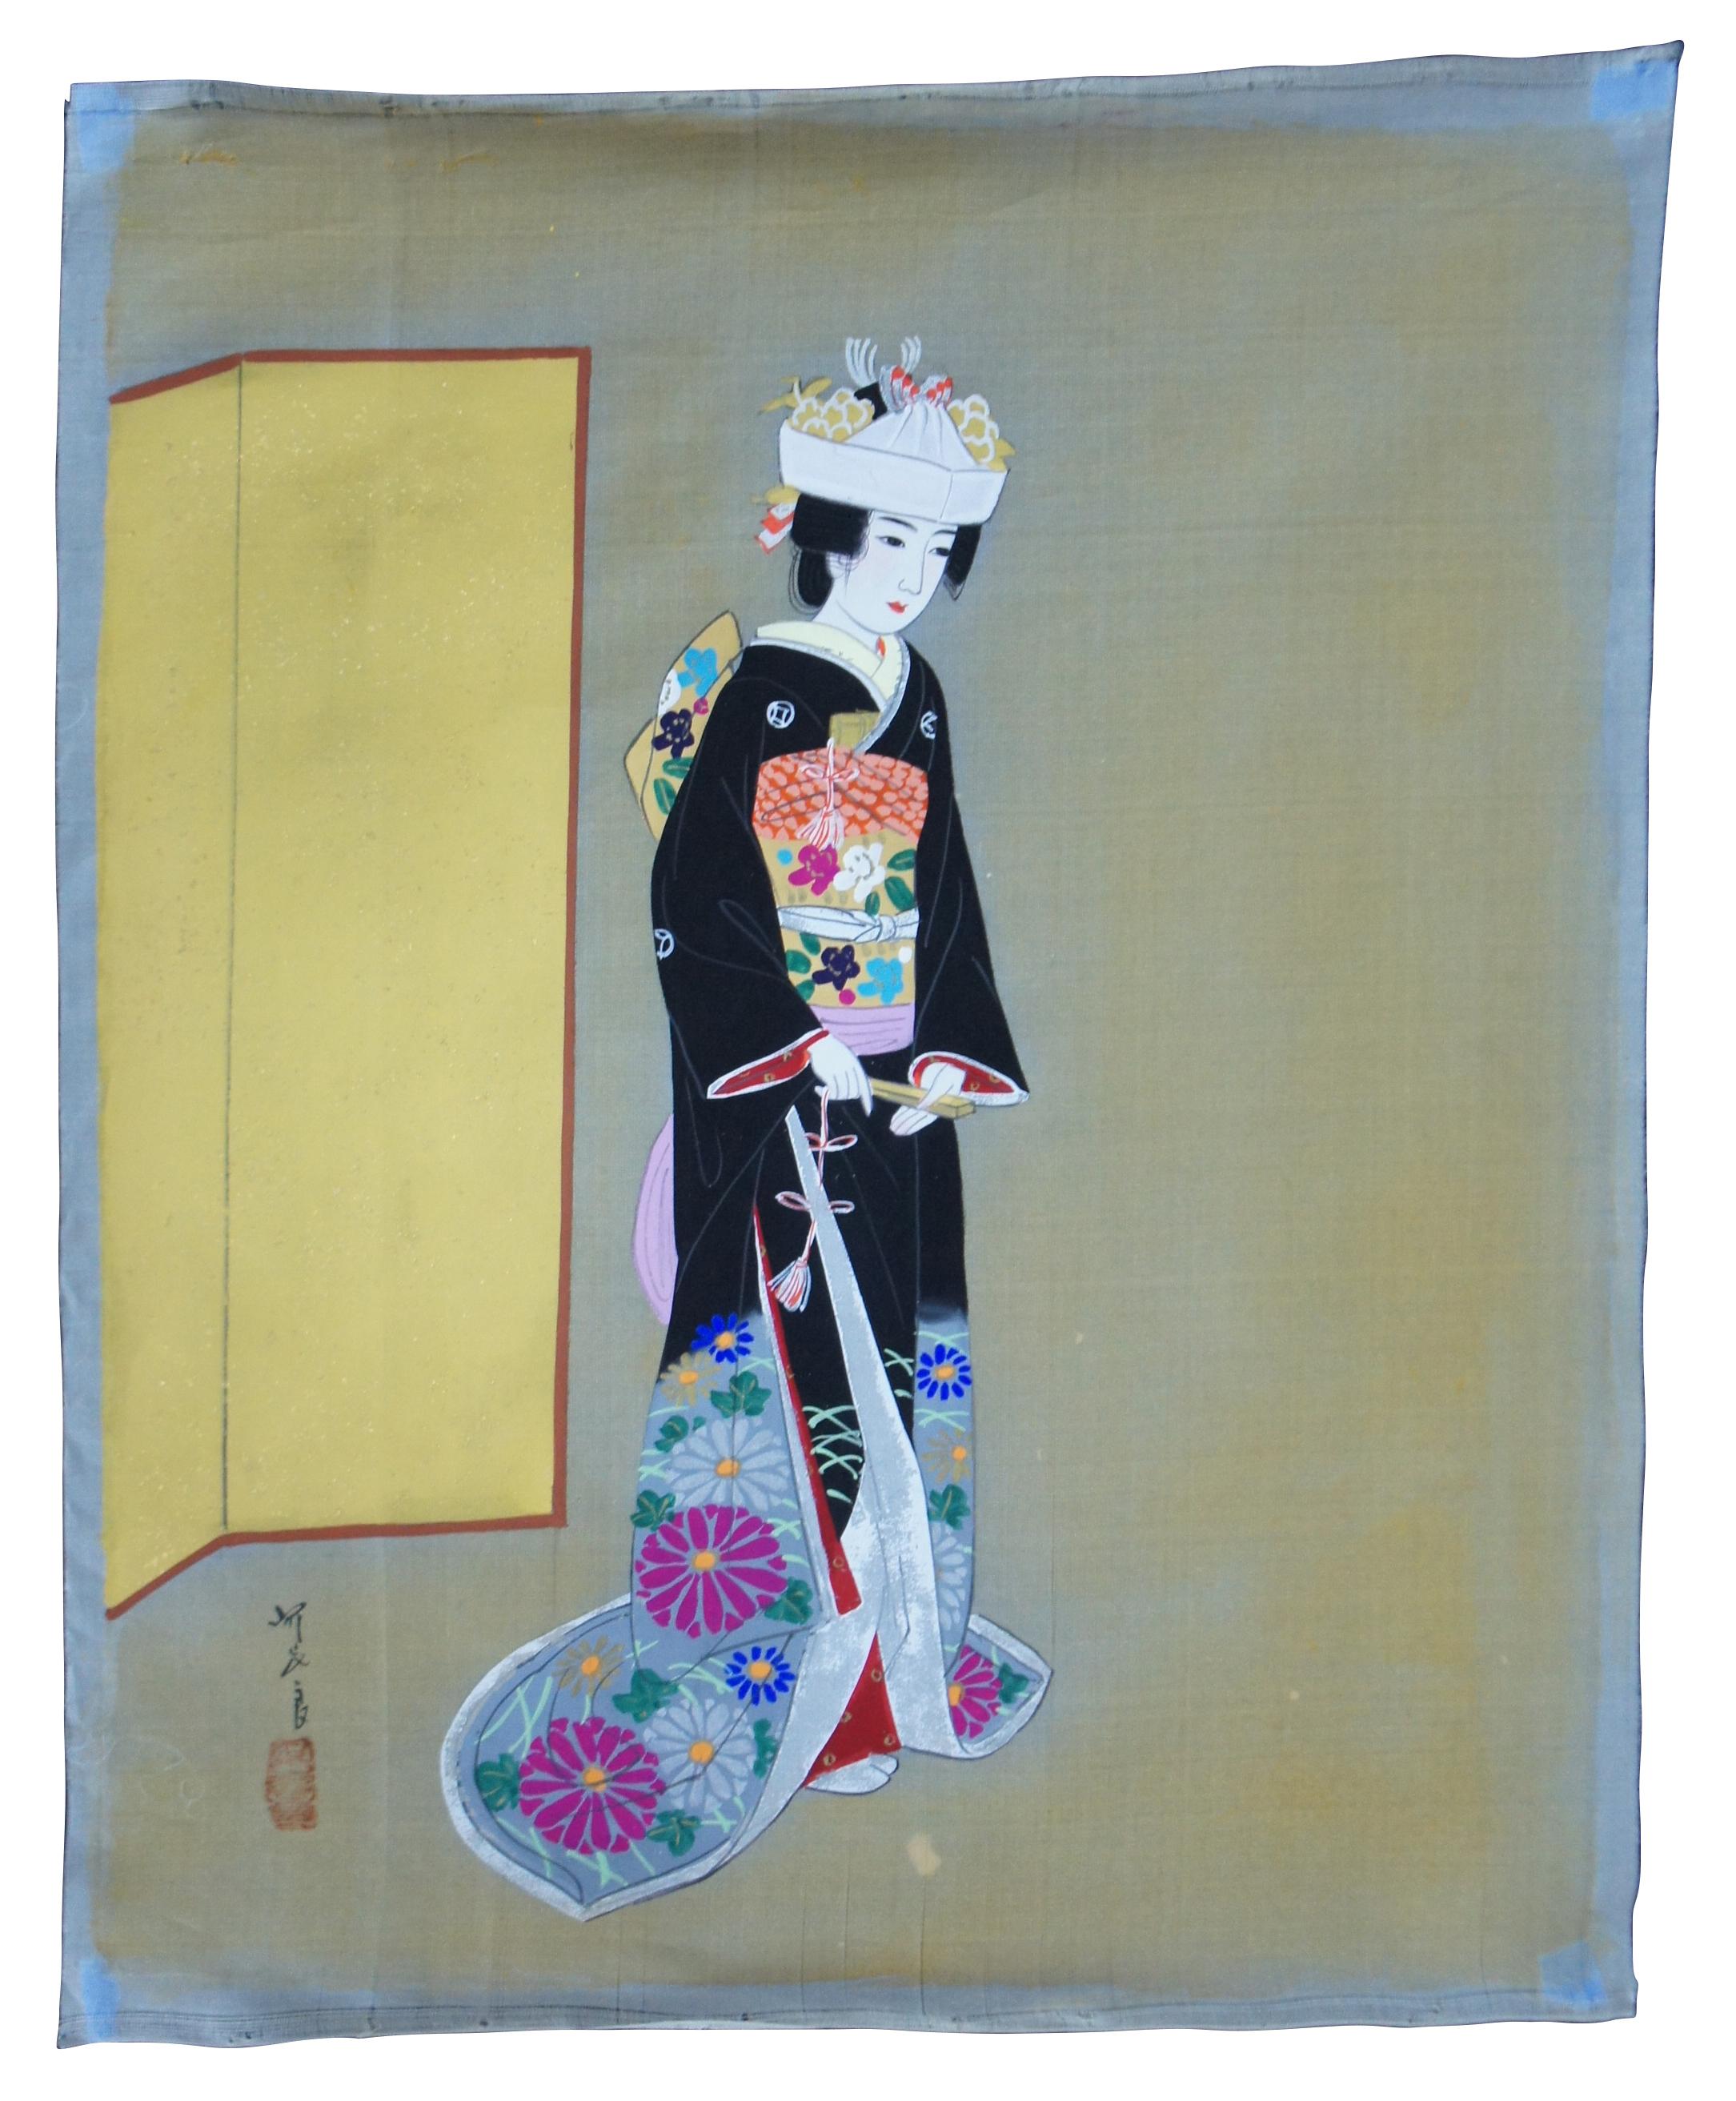 Lot de quatre peintures japonaises sur soie non encadrées, dont une représentant une femme ou une geisha et trois paysages d'eau et de montagne avec jonques, voiliers et bateaux de pêche. Comprend un tube de rangement.
  